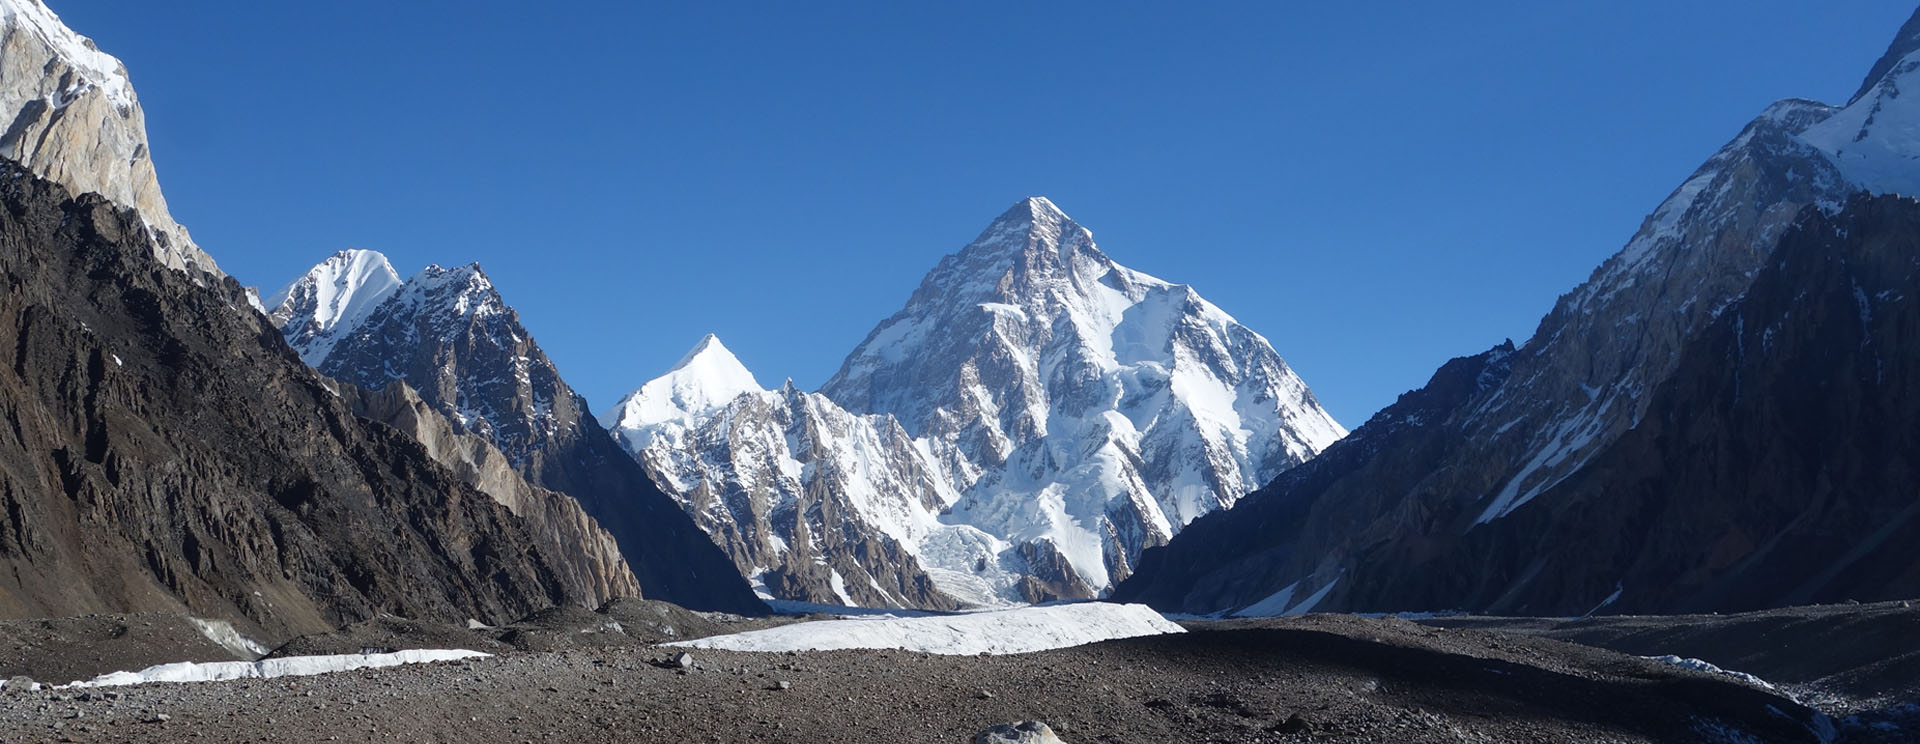 K2 besteget af dansker - uden kunstig ilt